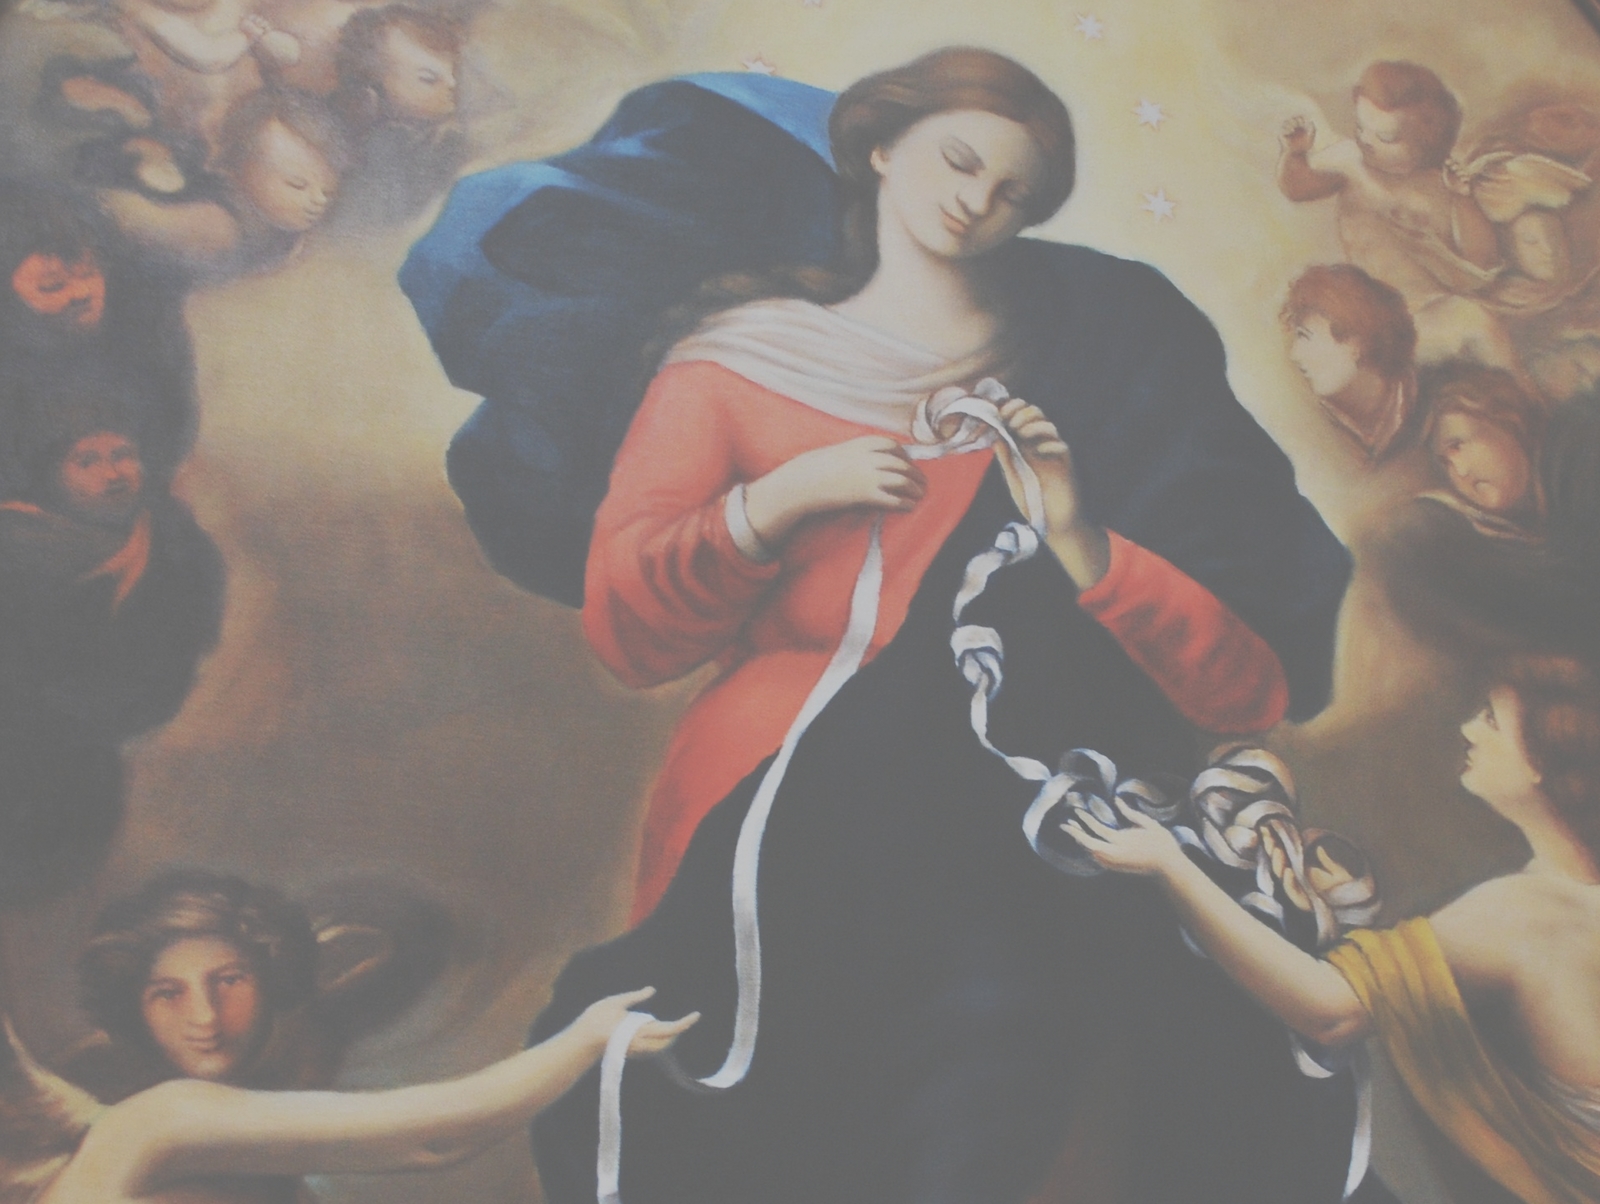 Nuestra Señora que Desata los Nudos, devoción del papa Francisco, Alemania (8 dic, 28 sep)